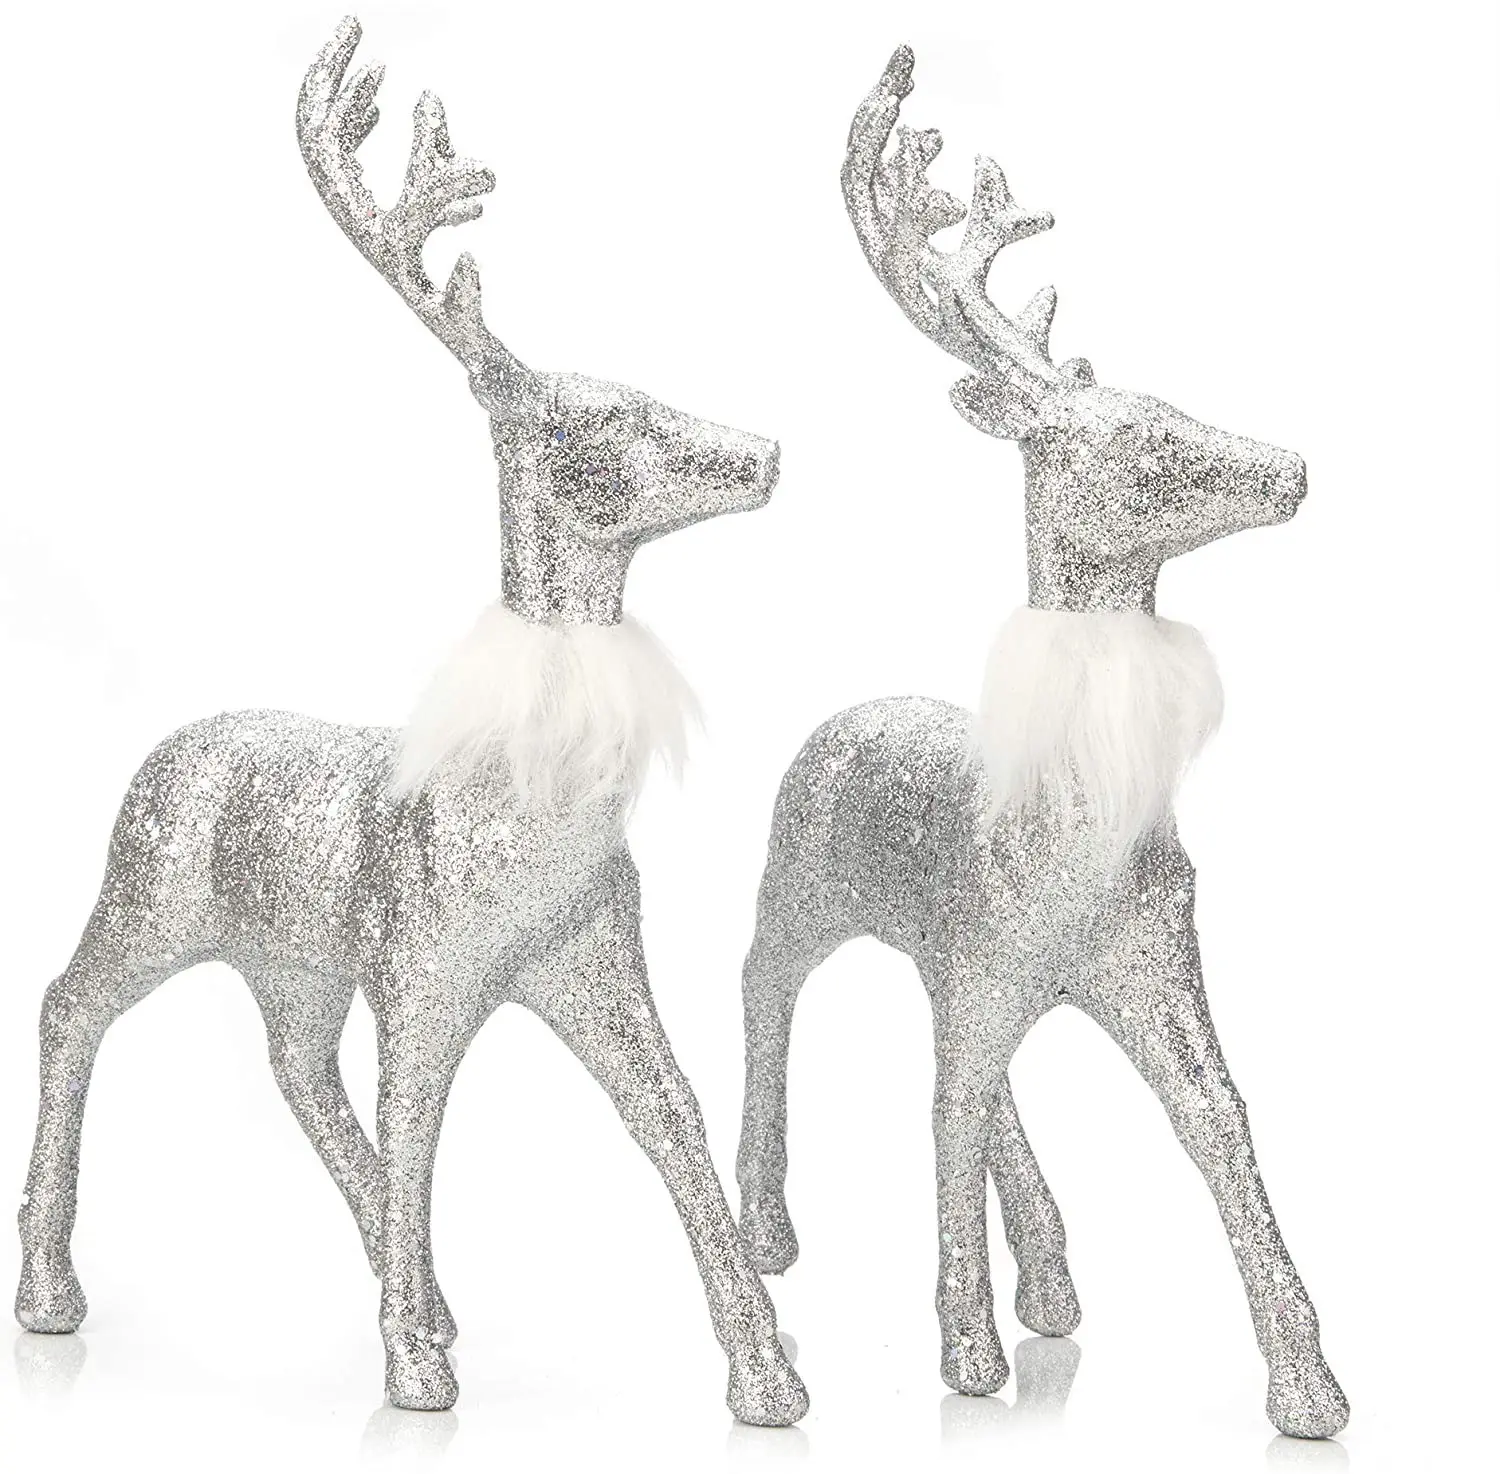 Enfeites de resina nórdica para maquiagem, enfeites de elfo e prata para decoração de natal, de animal